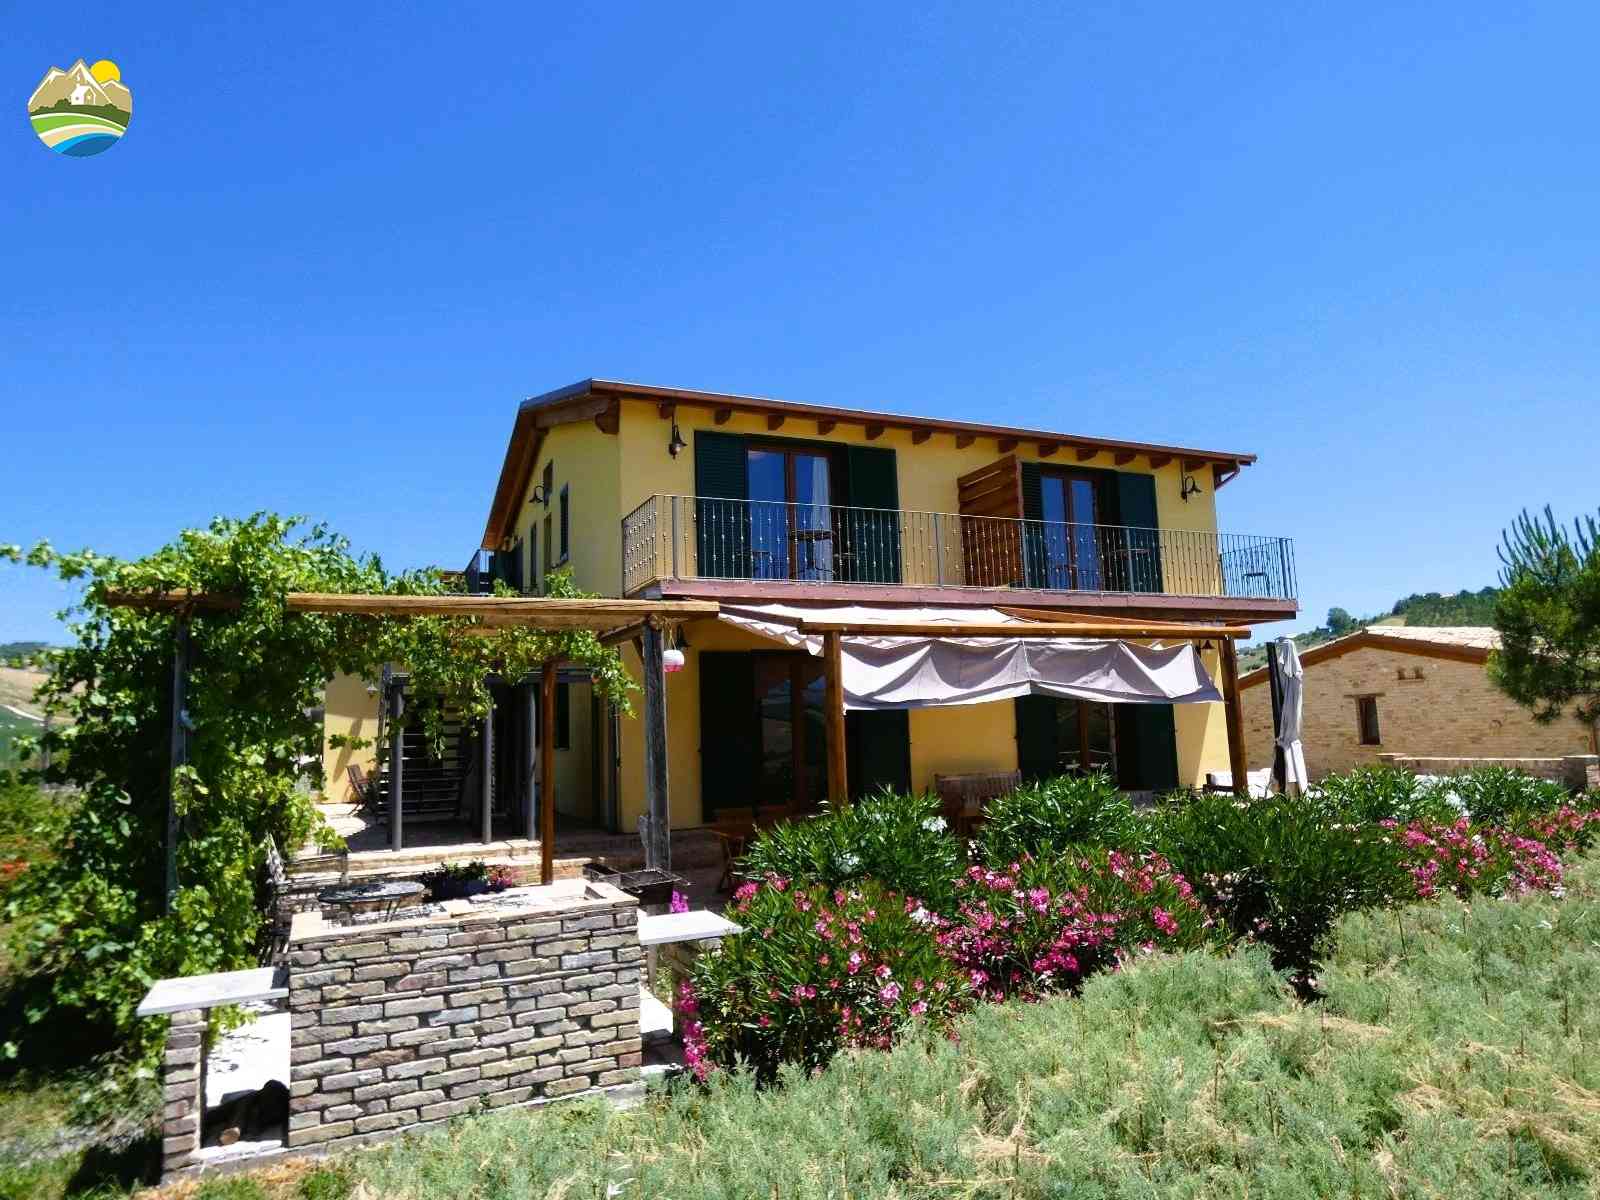 Villa Villa in vendita Bellante (TE), Villa Il Frutteto - Bellante - EUR 509.983 780